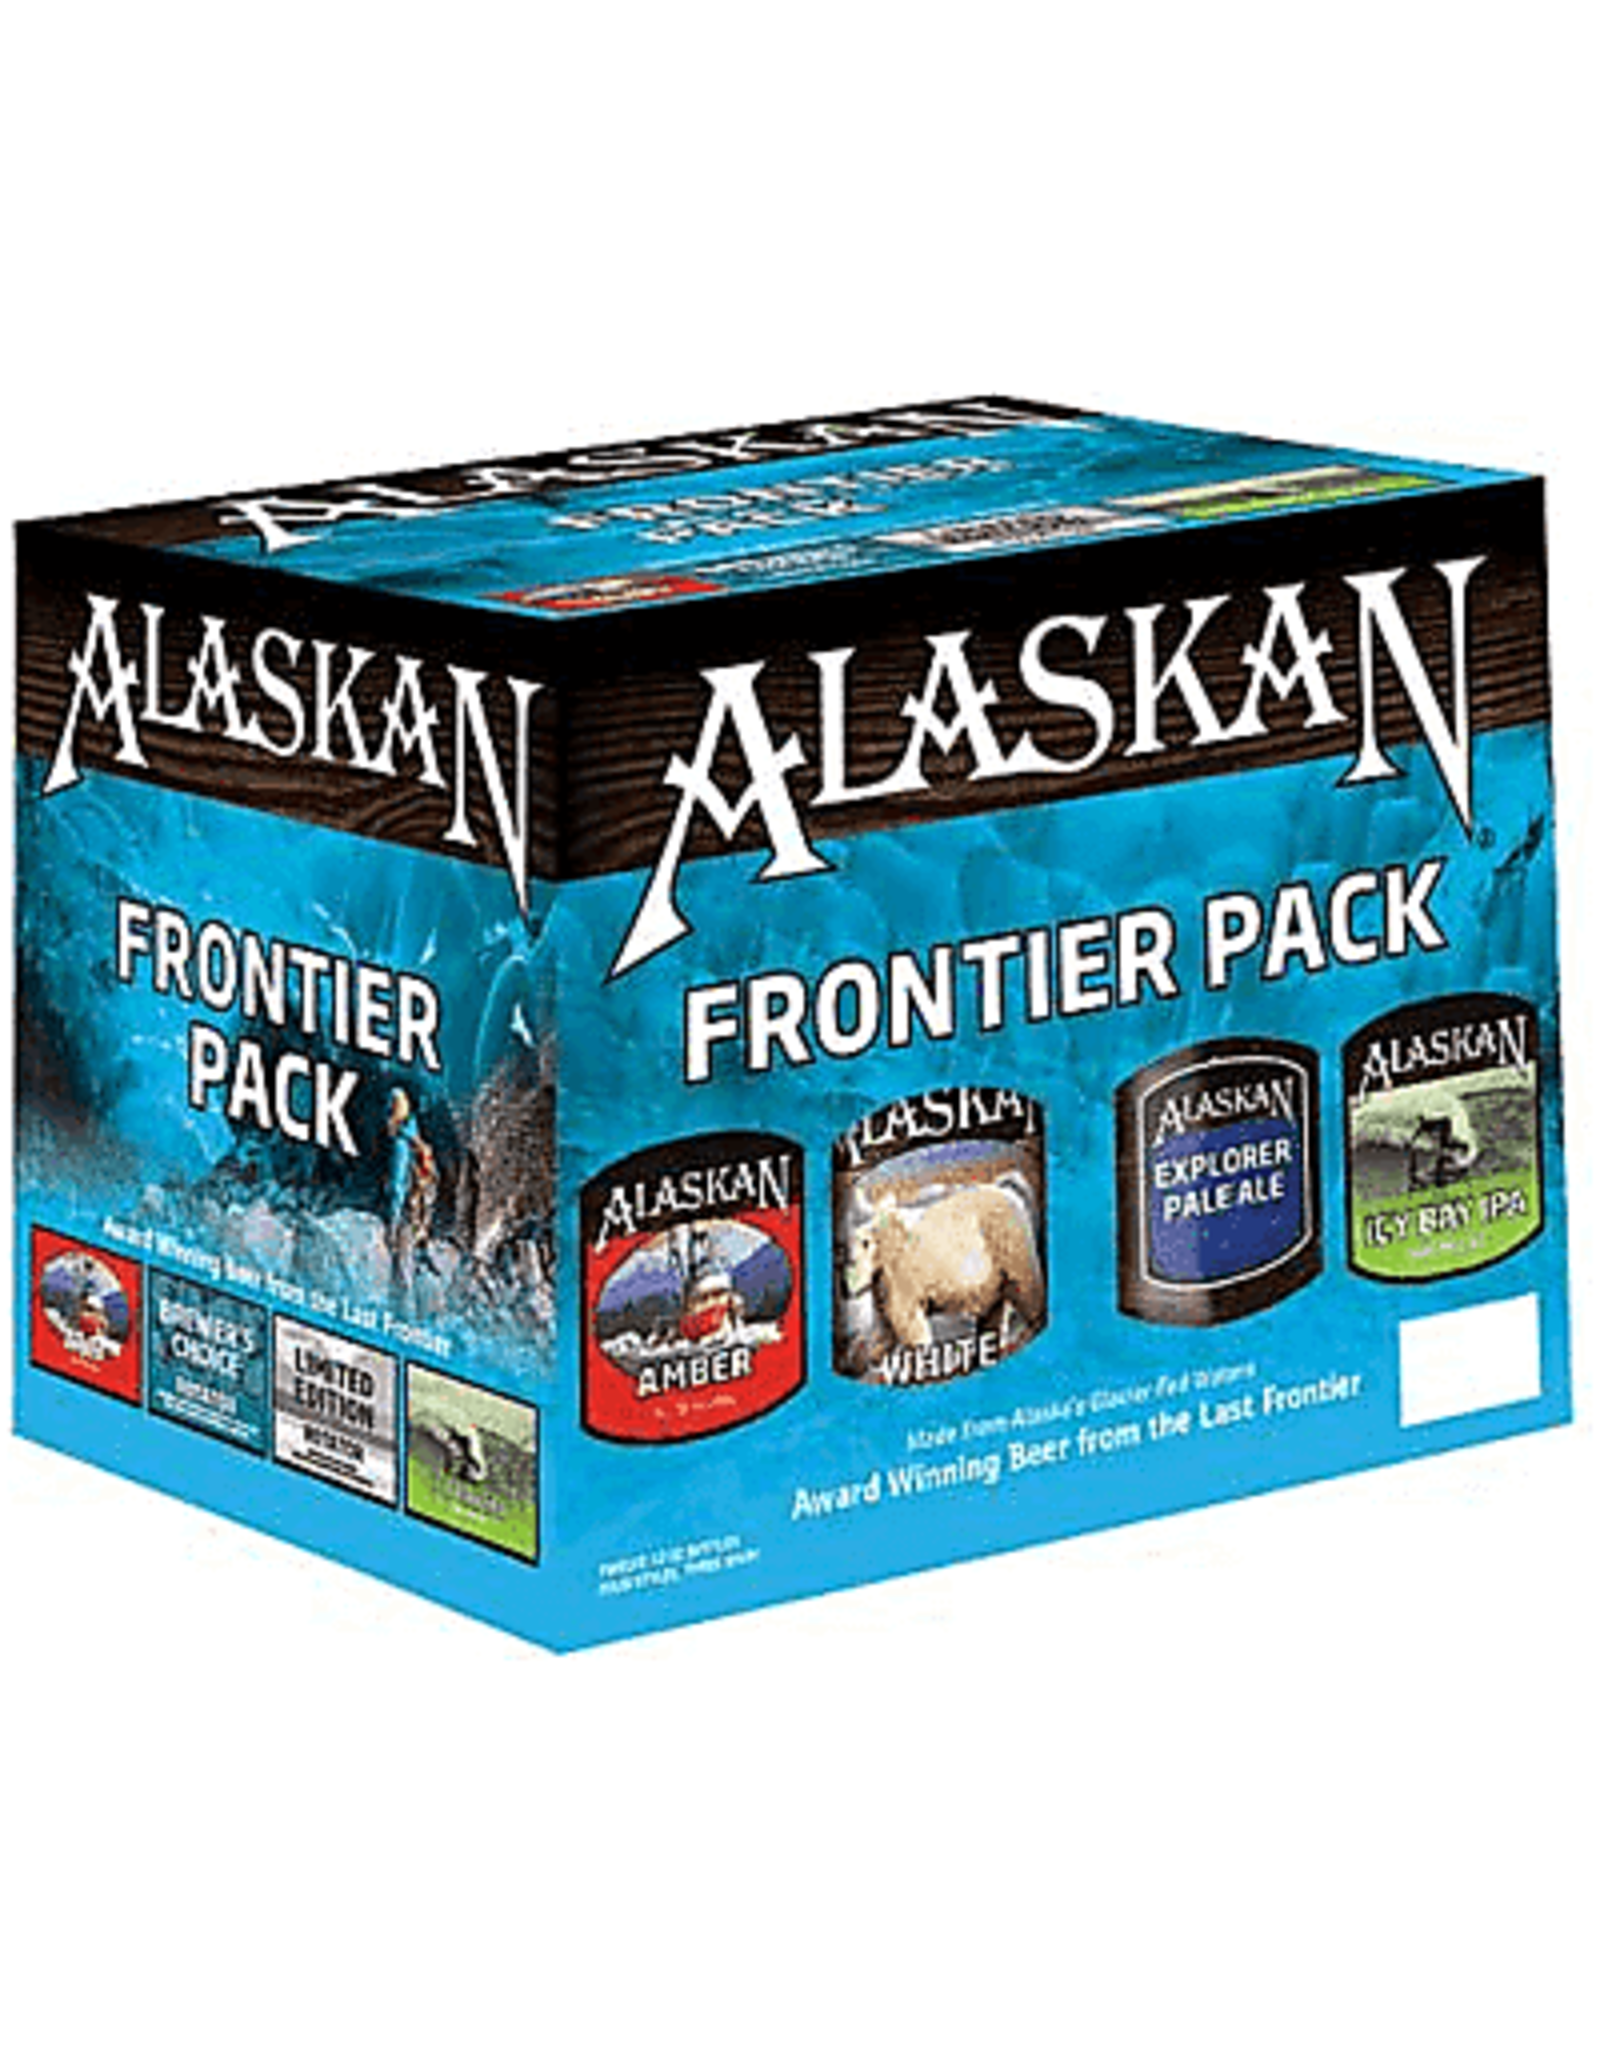 Alaskan Frontier Pack 12x12 oz bottles